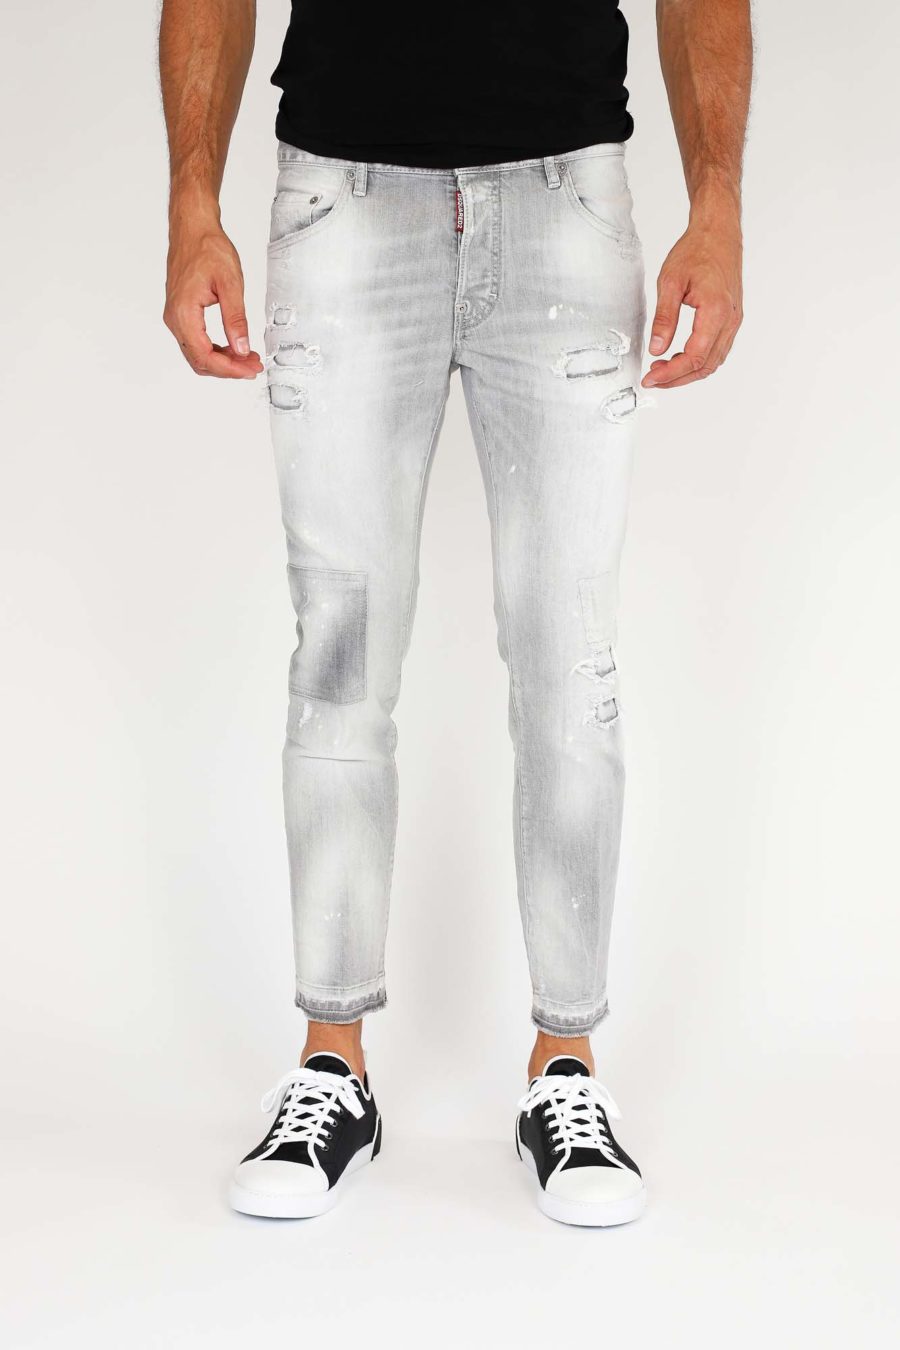 Pantalón vaquero "Skater" gris claro con parches - IMG 9852